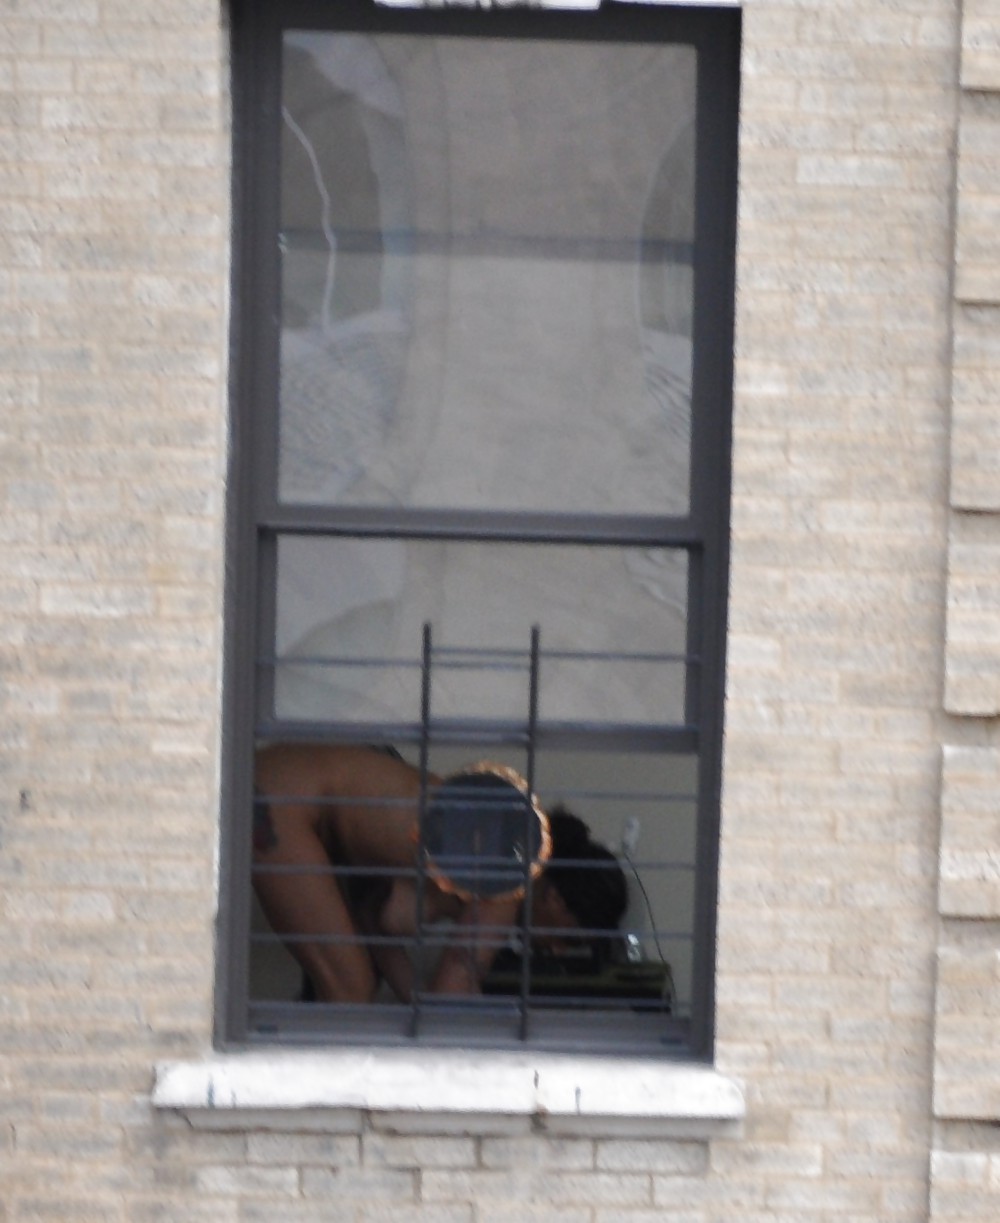 Harlem Naked Neighbor Girl Naked in the Window - New York #5378608